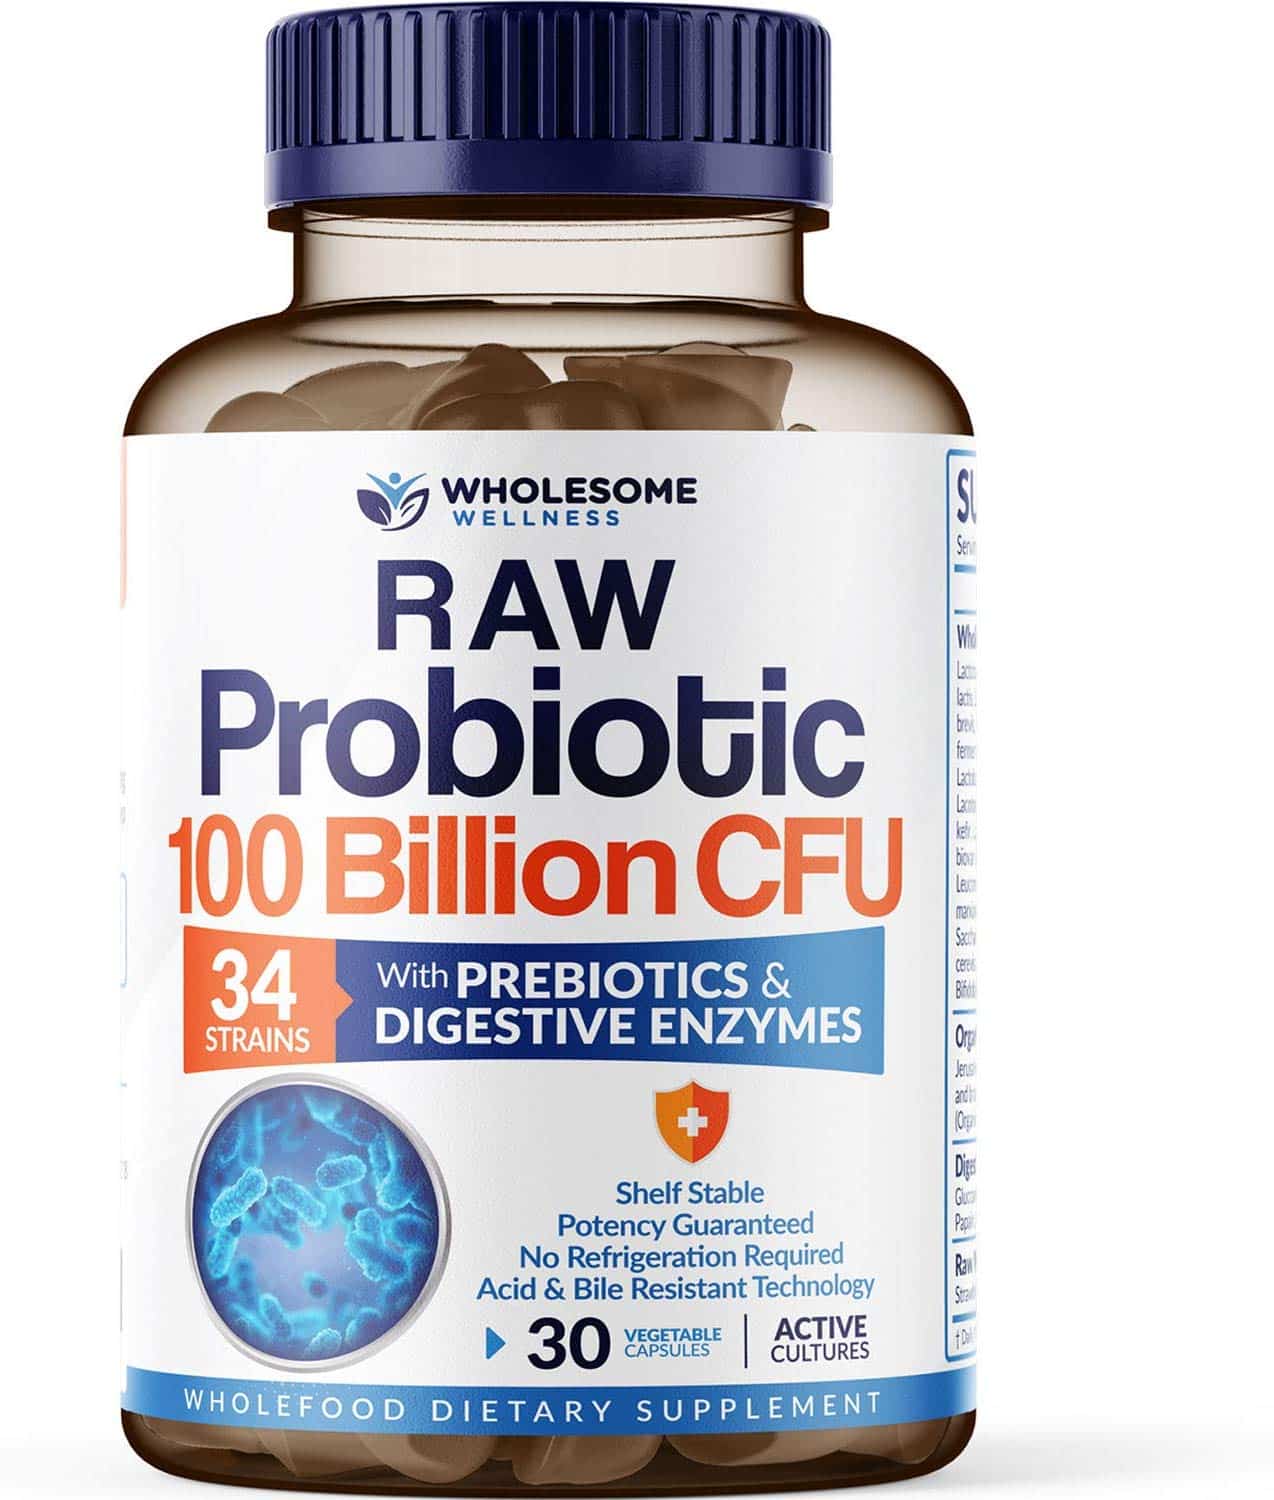 Best Probiotic [2020] Top Rated Probiotics Supplements Brands [Review]